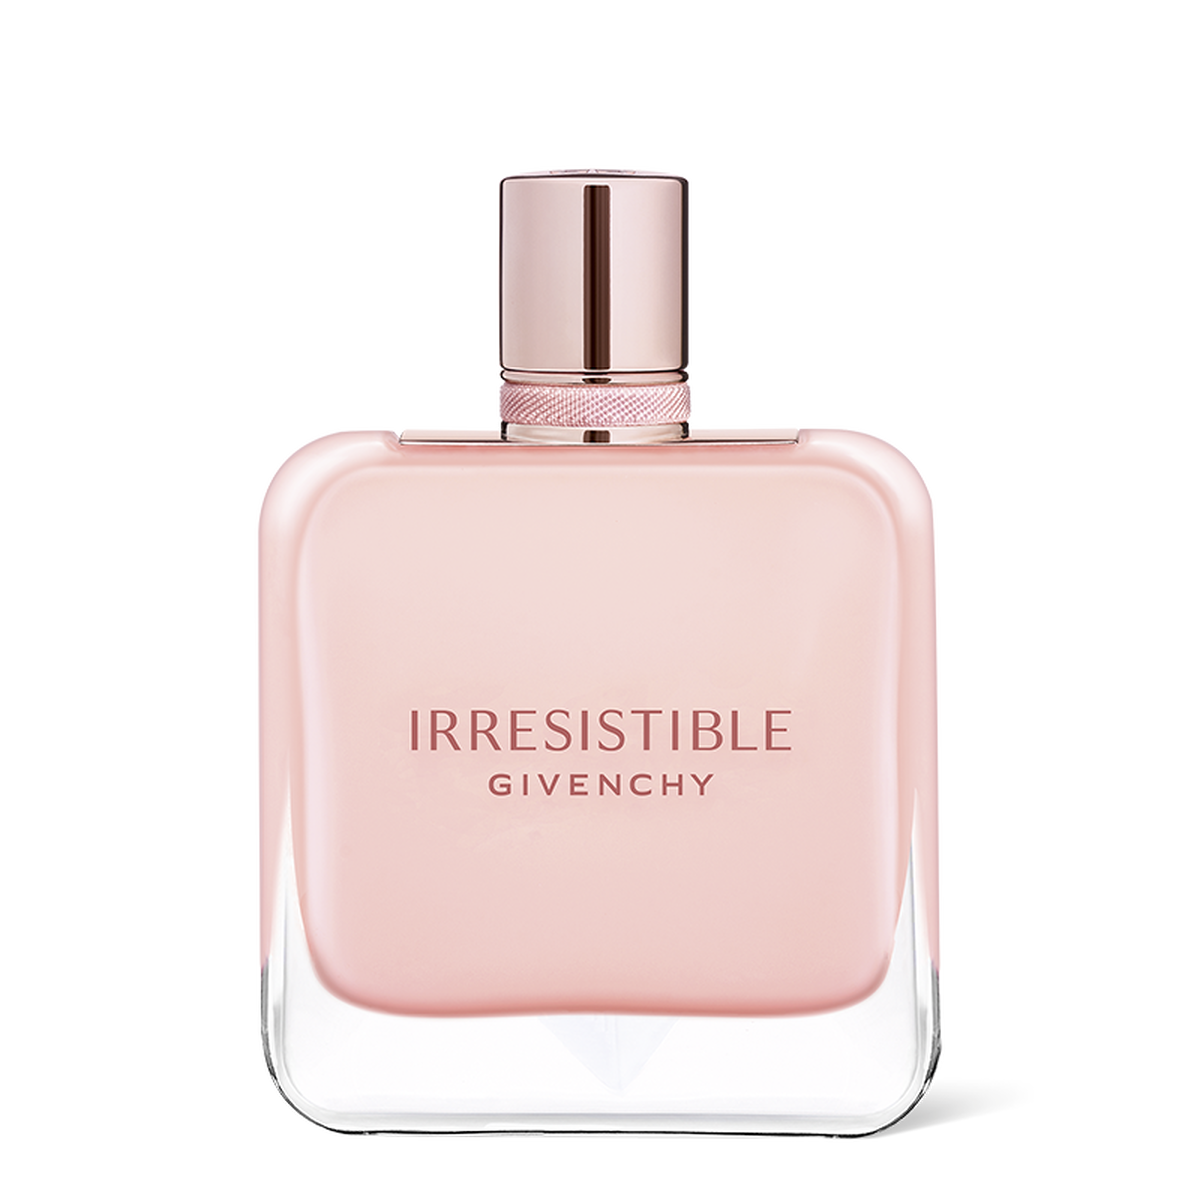 Irresistible - Eau de parfum rose velvet floral, chypre, musky